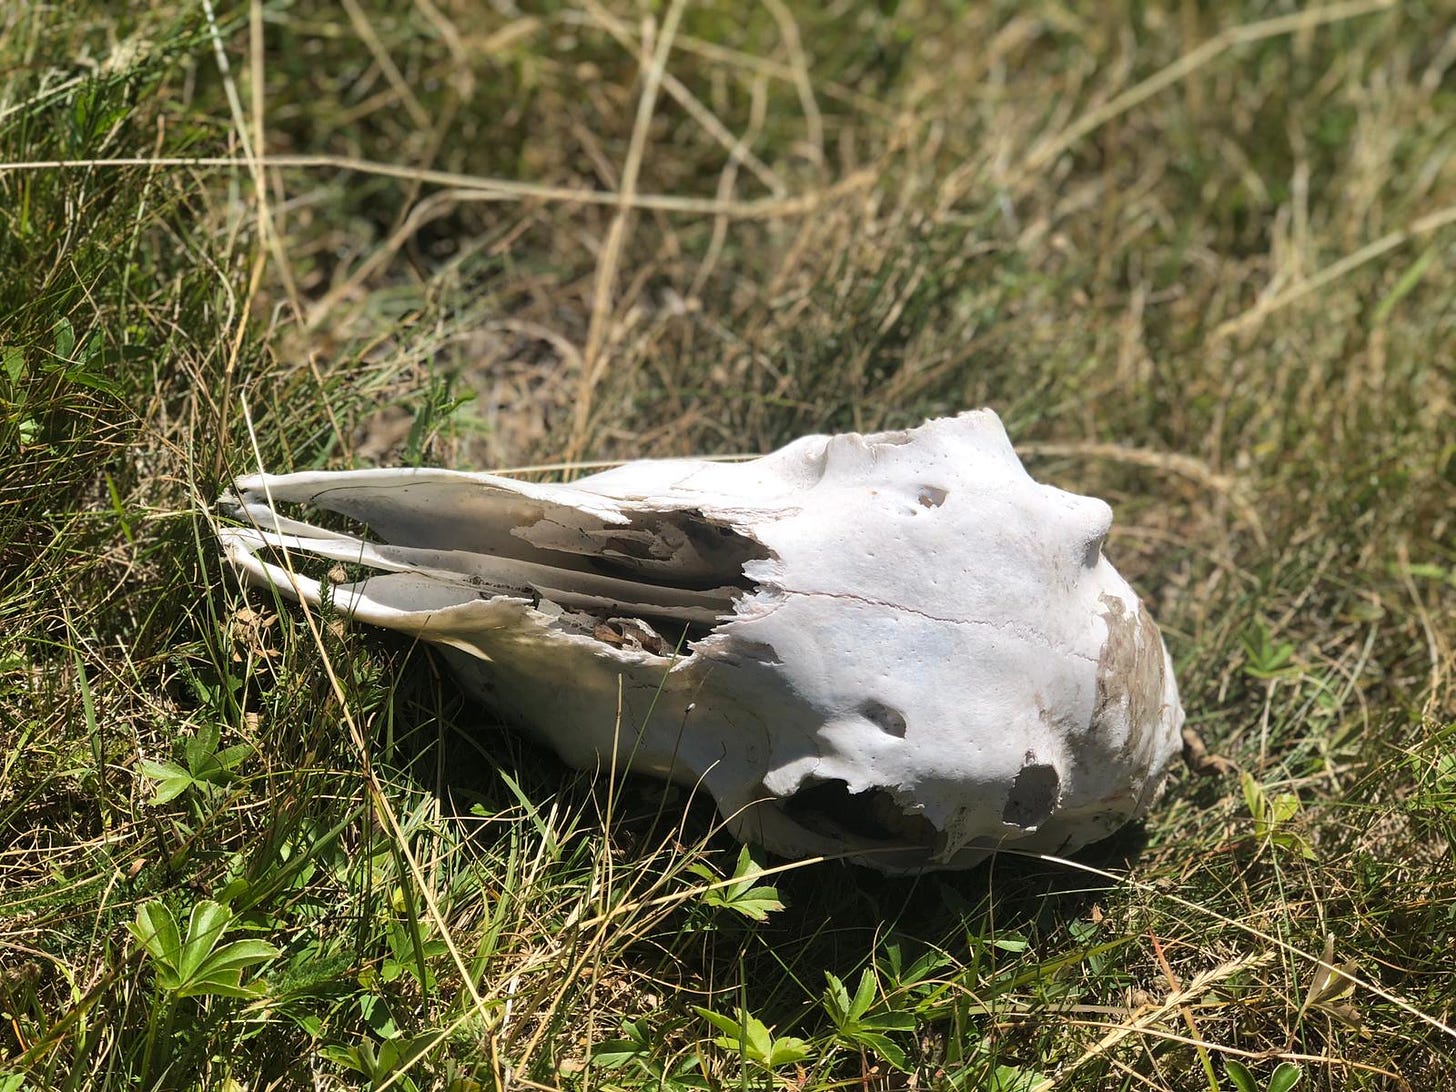 Skull lying in the grass